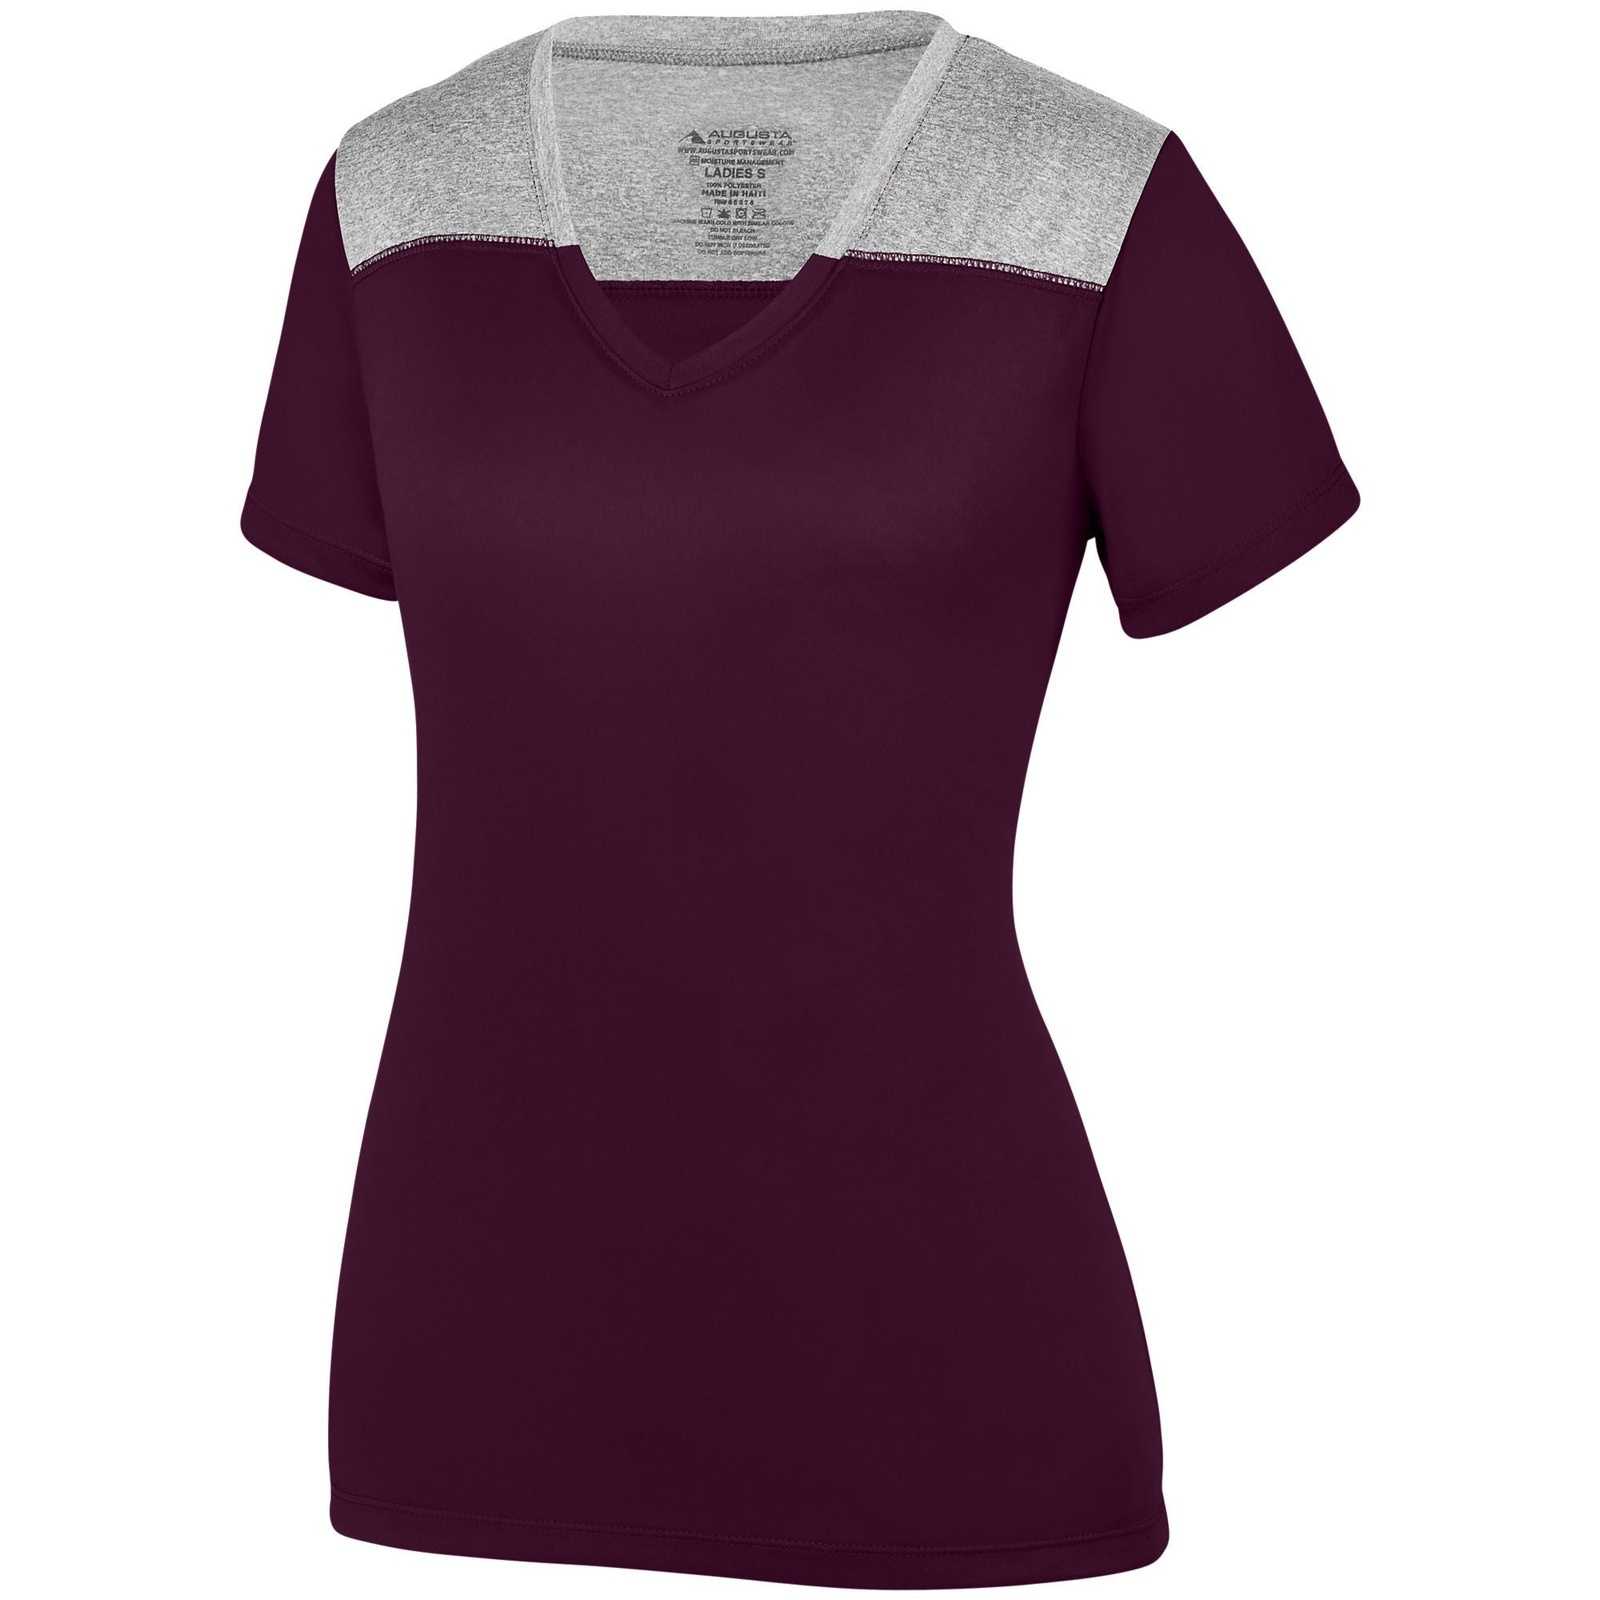 Augusta 3057 Ladies Challenge T-Shirt - Dark Maroon Graphite Heather - HIT a Double